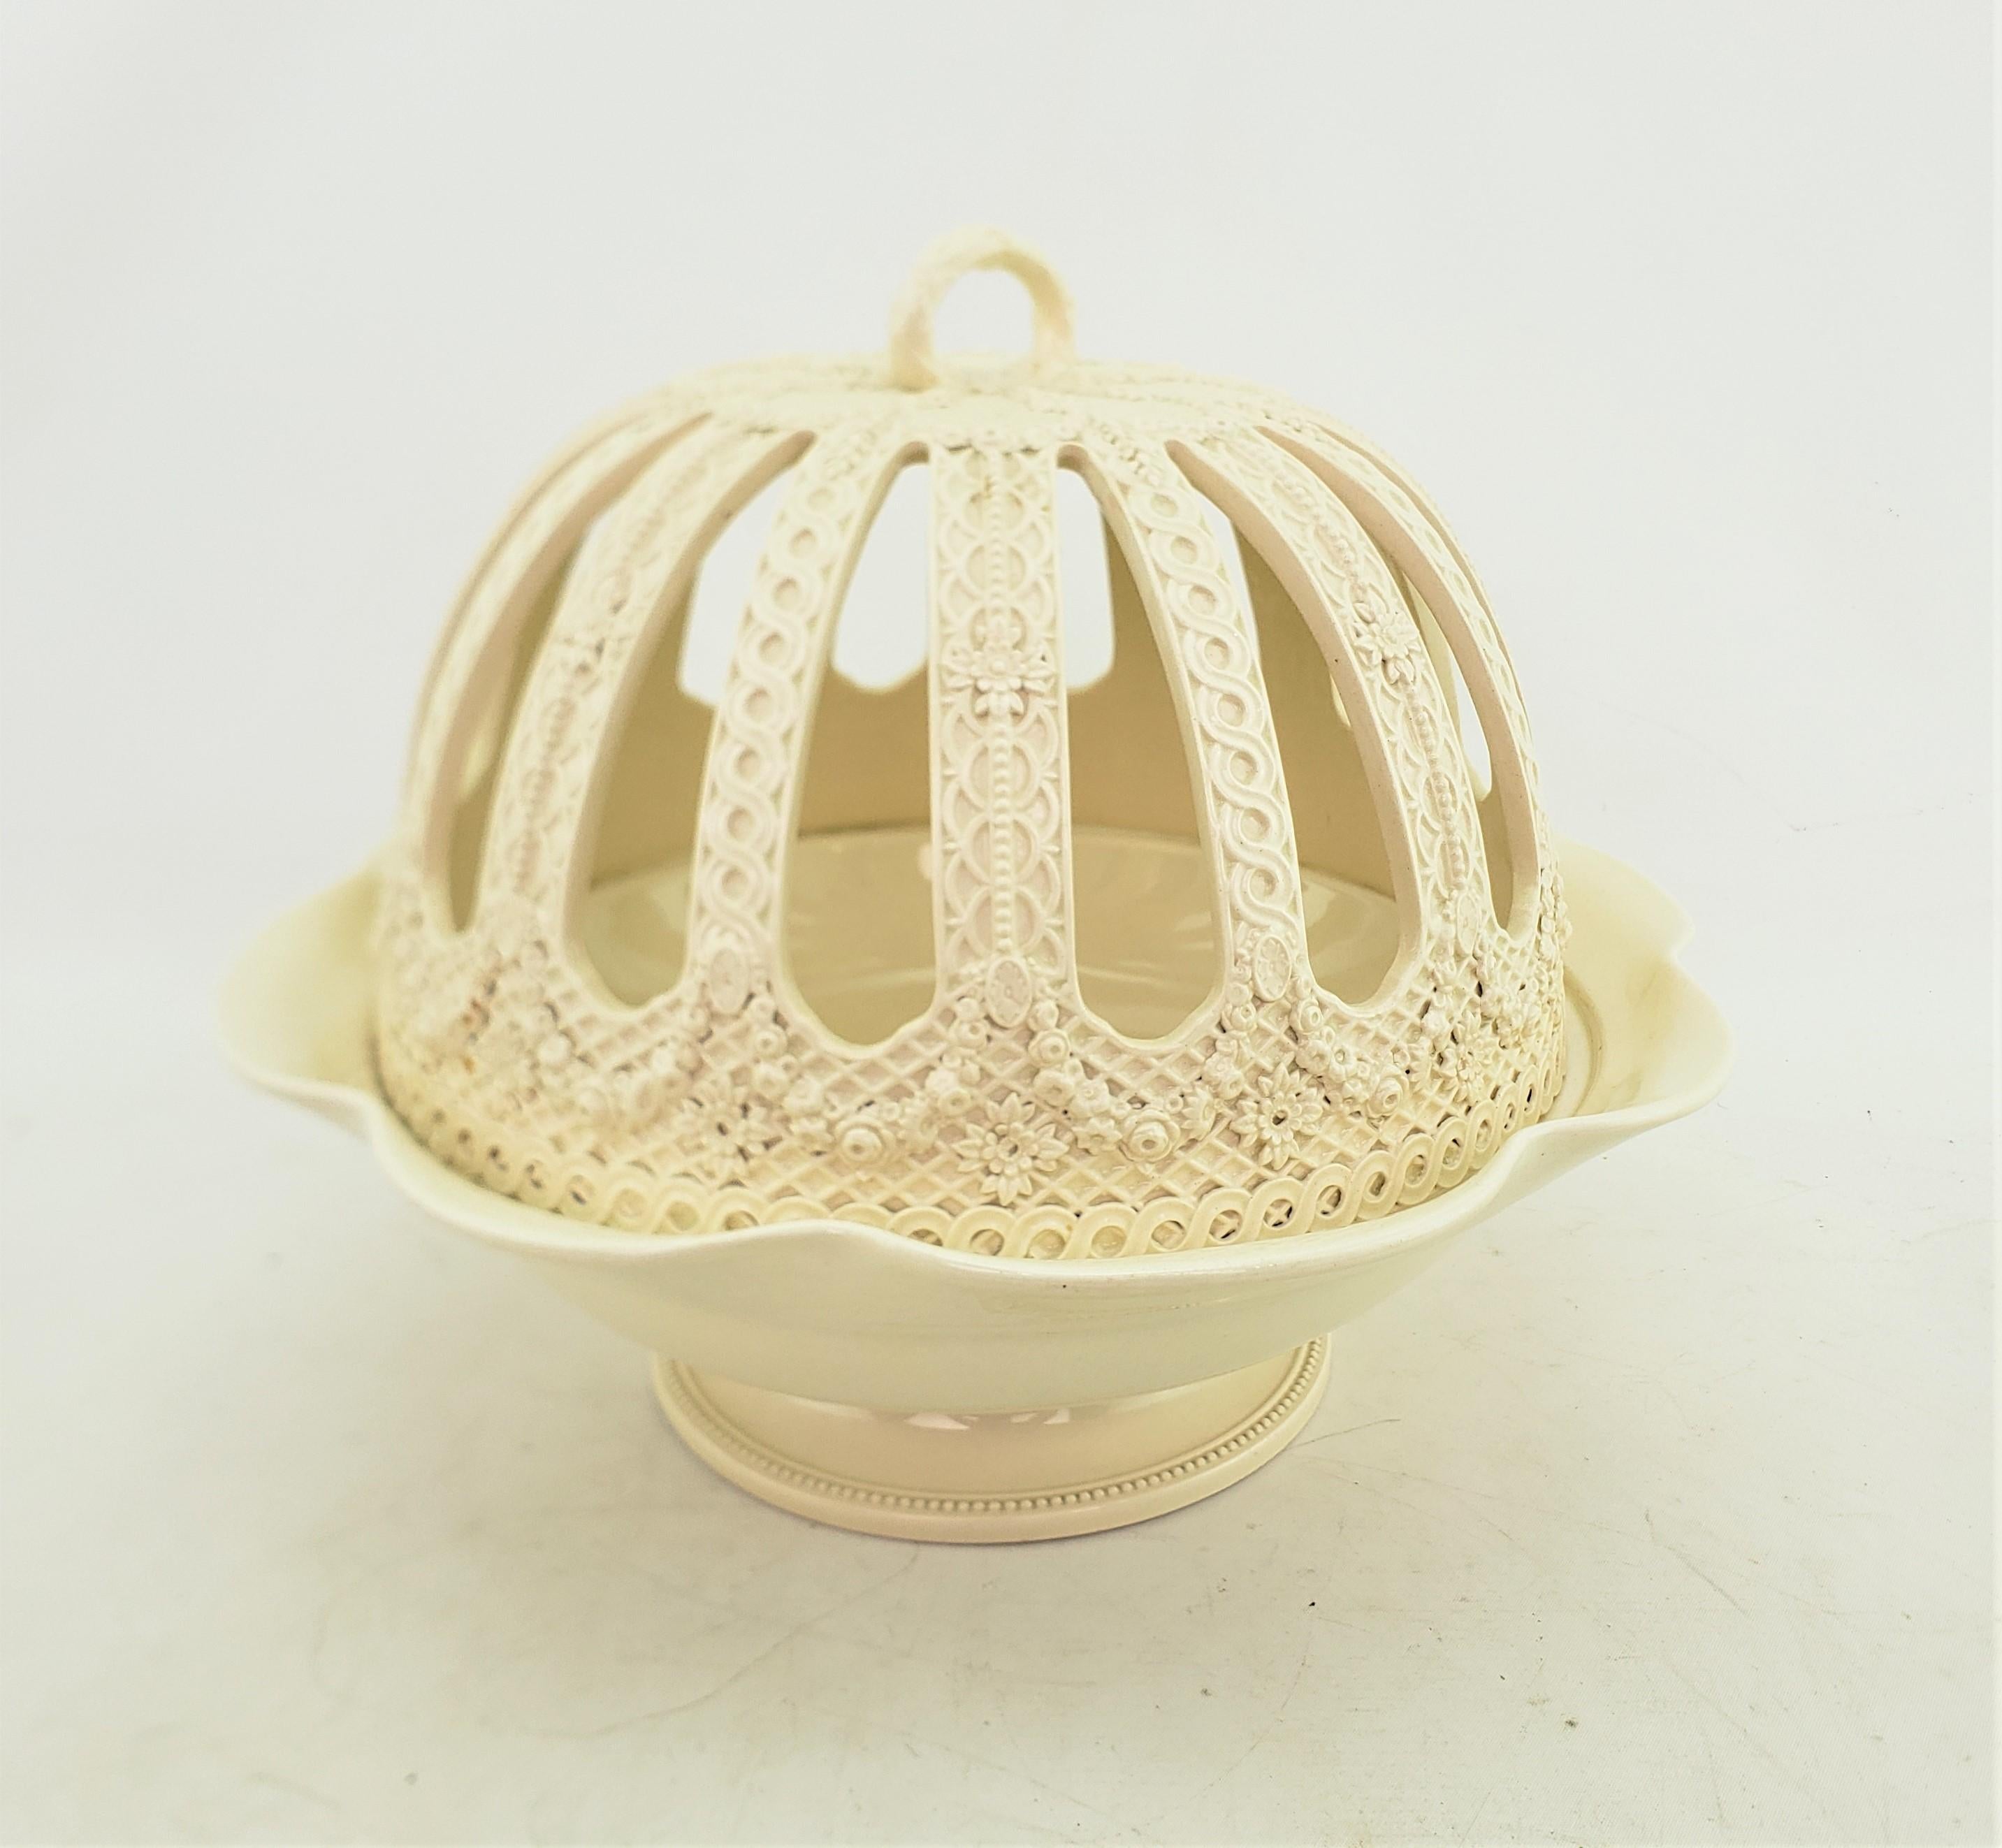 Ce bol couvert antique a été fabriqué par la manufacture Wedgwood d'Angleterre vers 1920 et réalisé dans un style géorgien. Ce bol orange est composé de céramique creamware, également connue sous le nom de Queen's Ware, et présente un fond de bol à